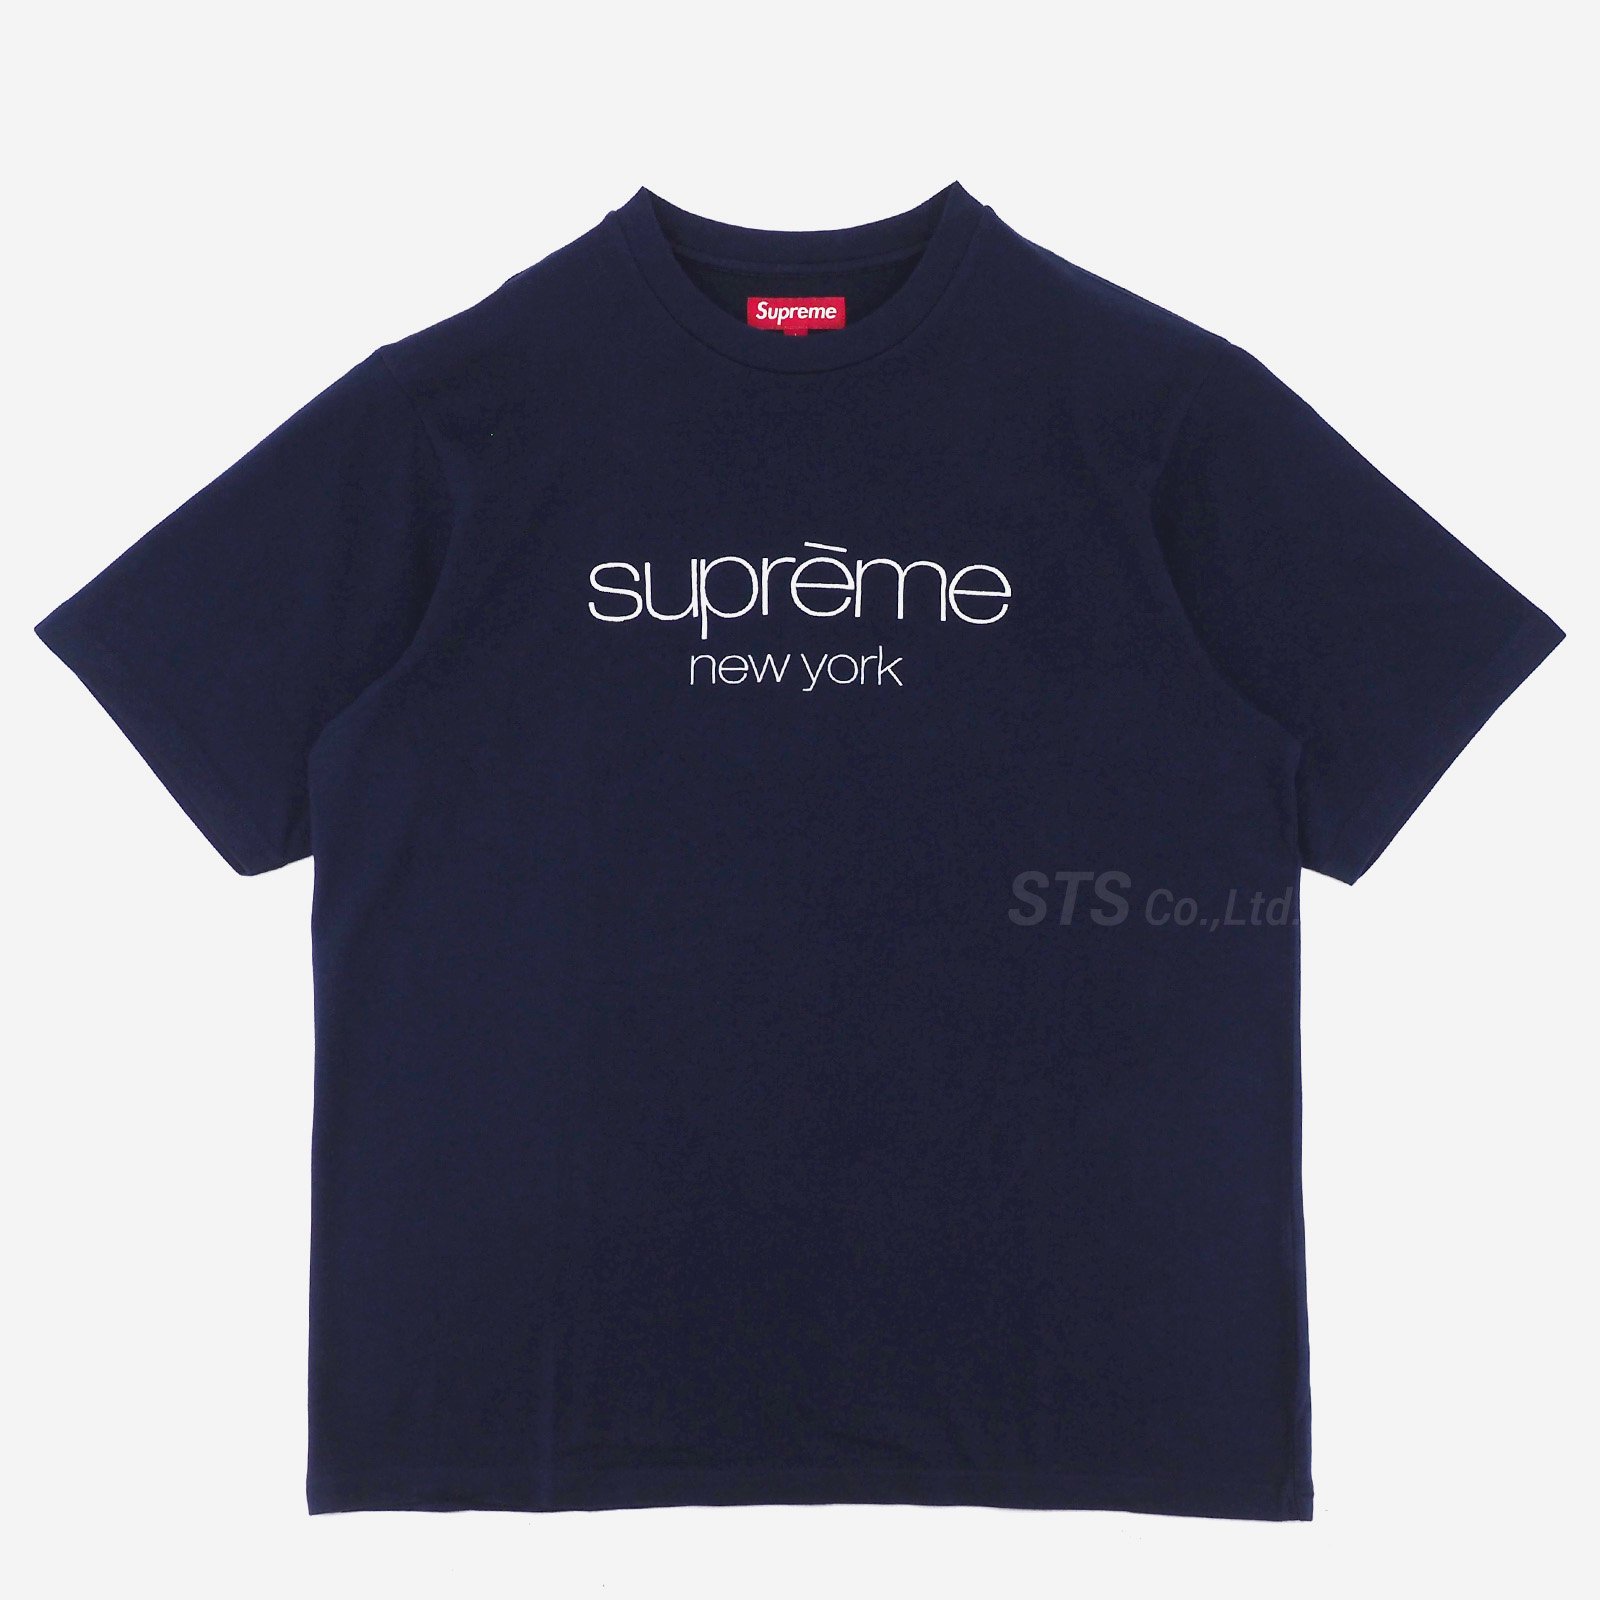 Supreme Classic Logo S/S Top 白